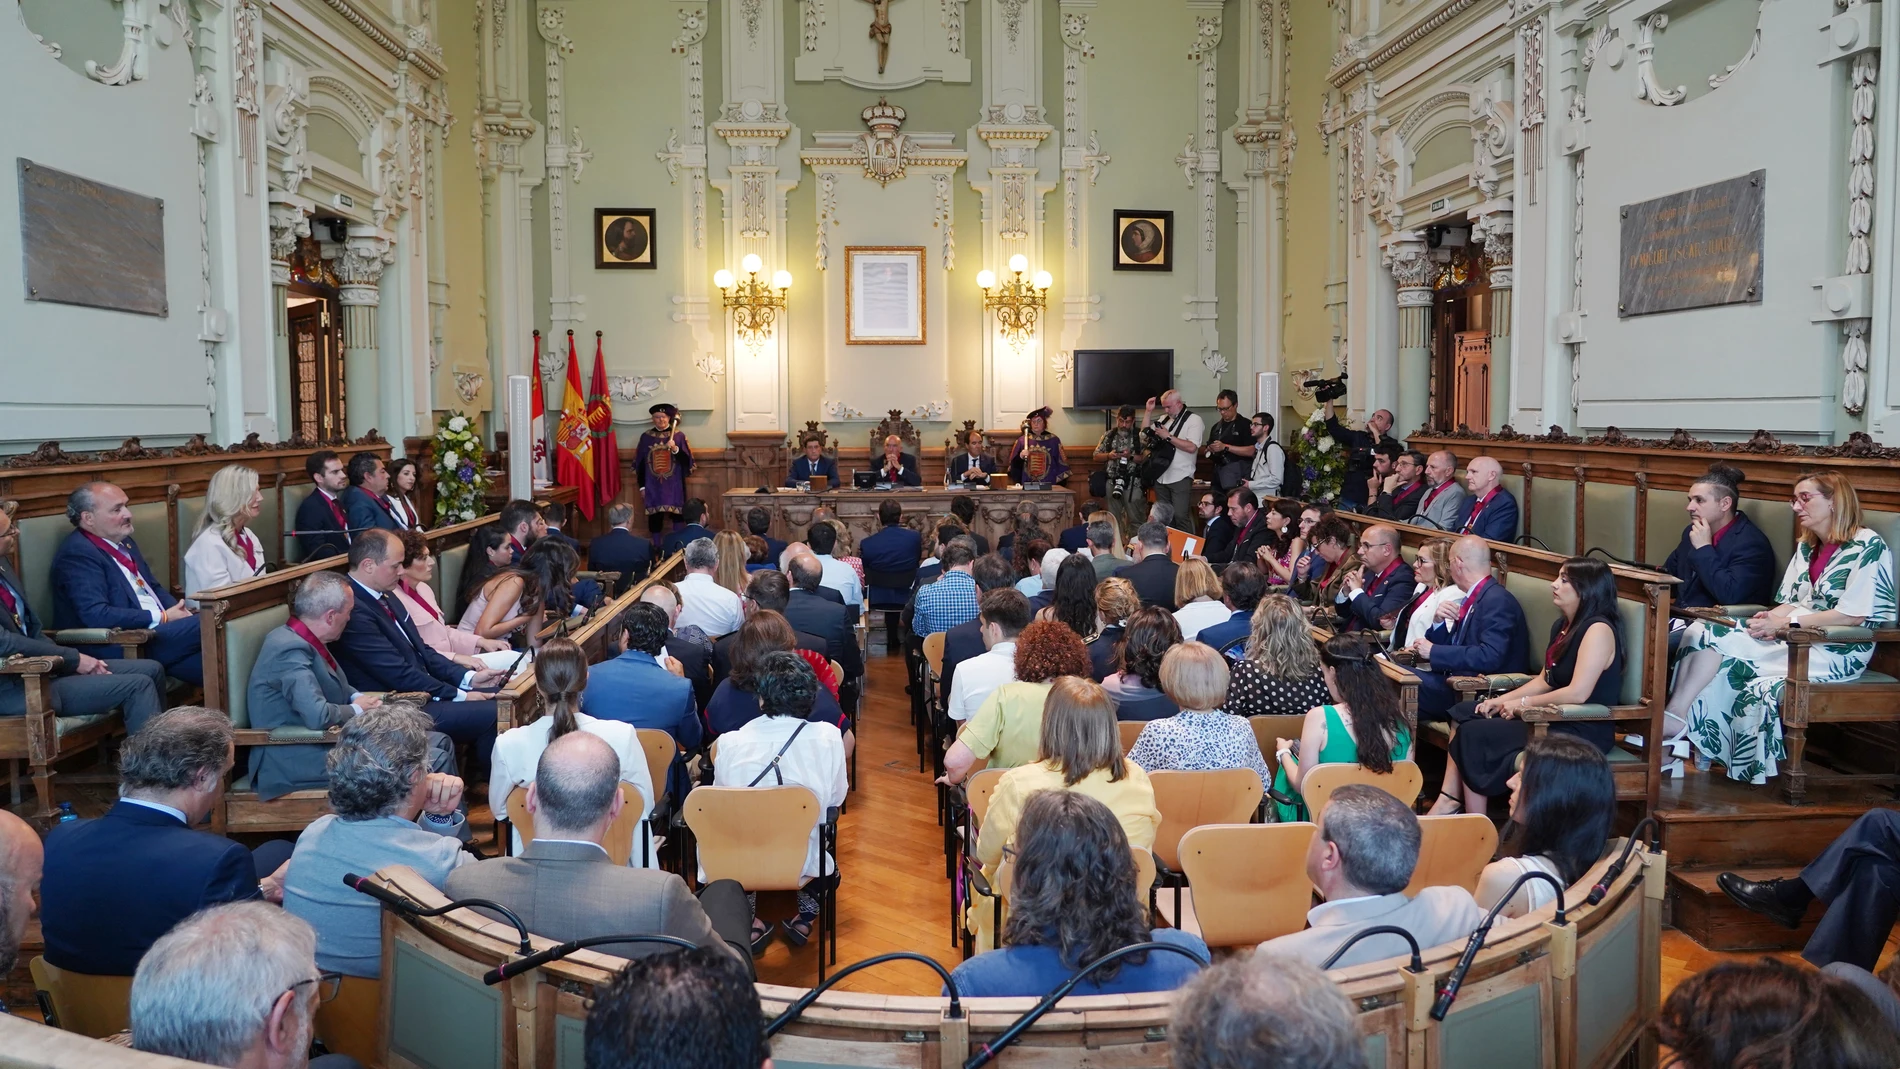 Pleno Ayuntamiento Valladolid